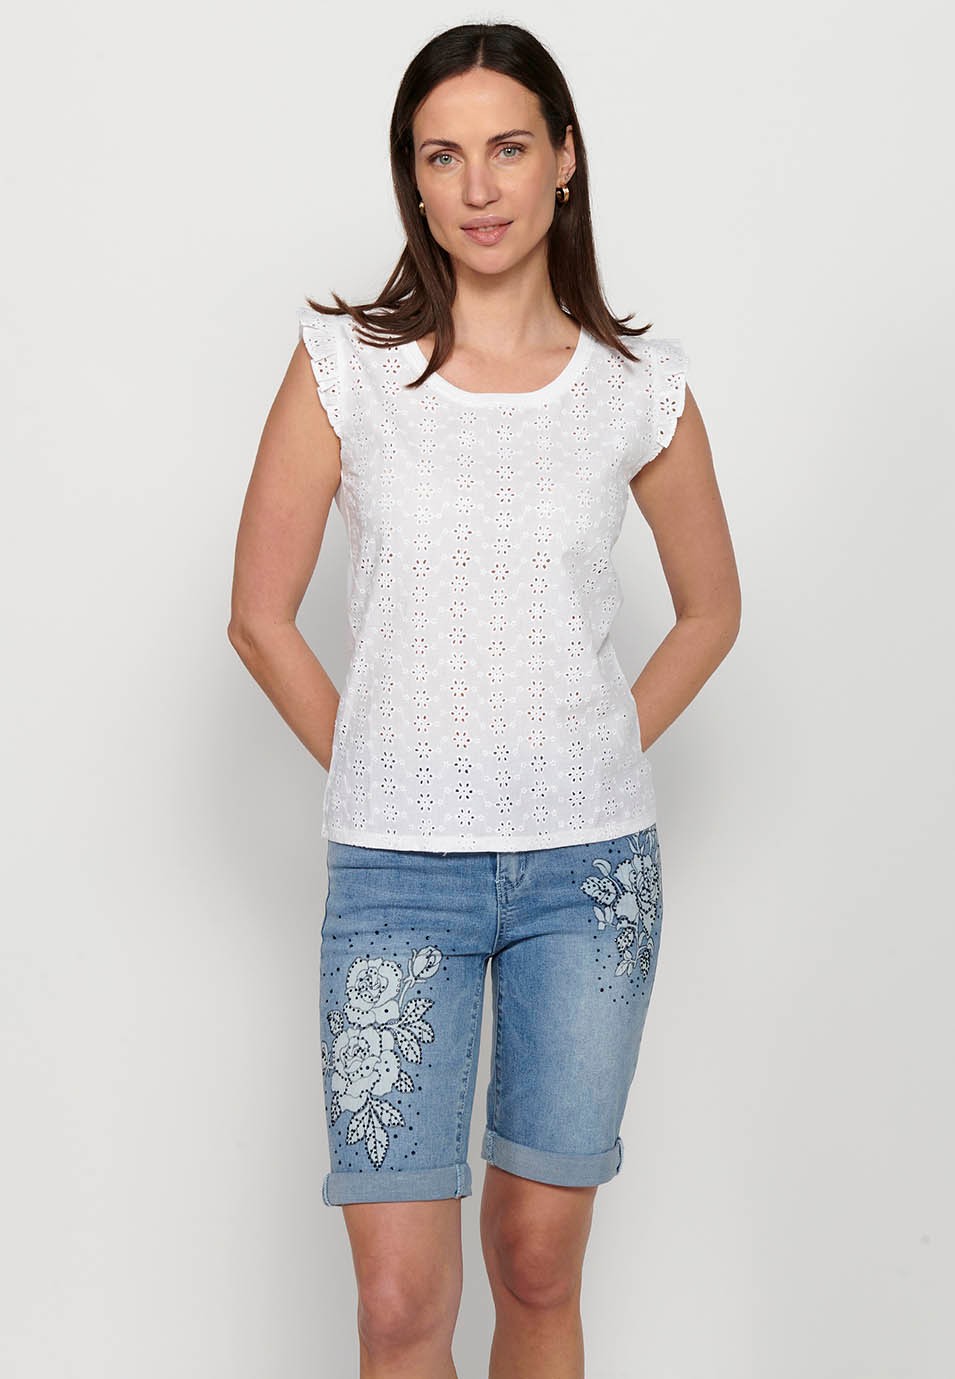 Kurzarm-T-Shirt, Rüschen an den Schultern, weiße Farbe für Damen